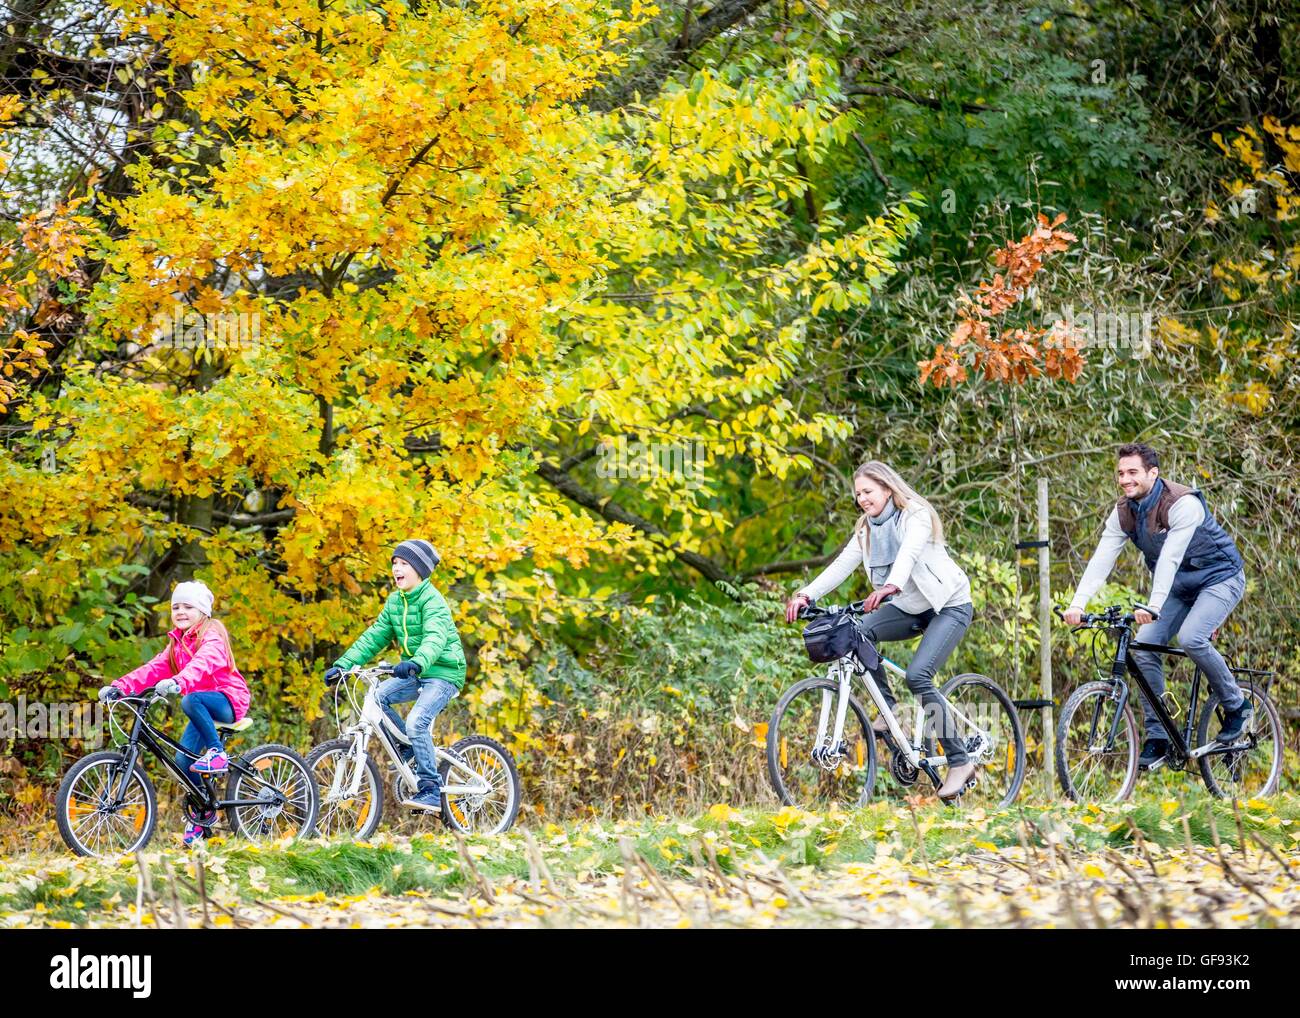 Parution du modèle. Ensemble en famille à vélo en automne. Banque D'Images